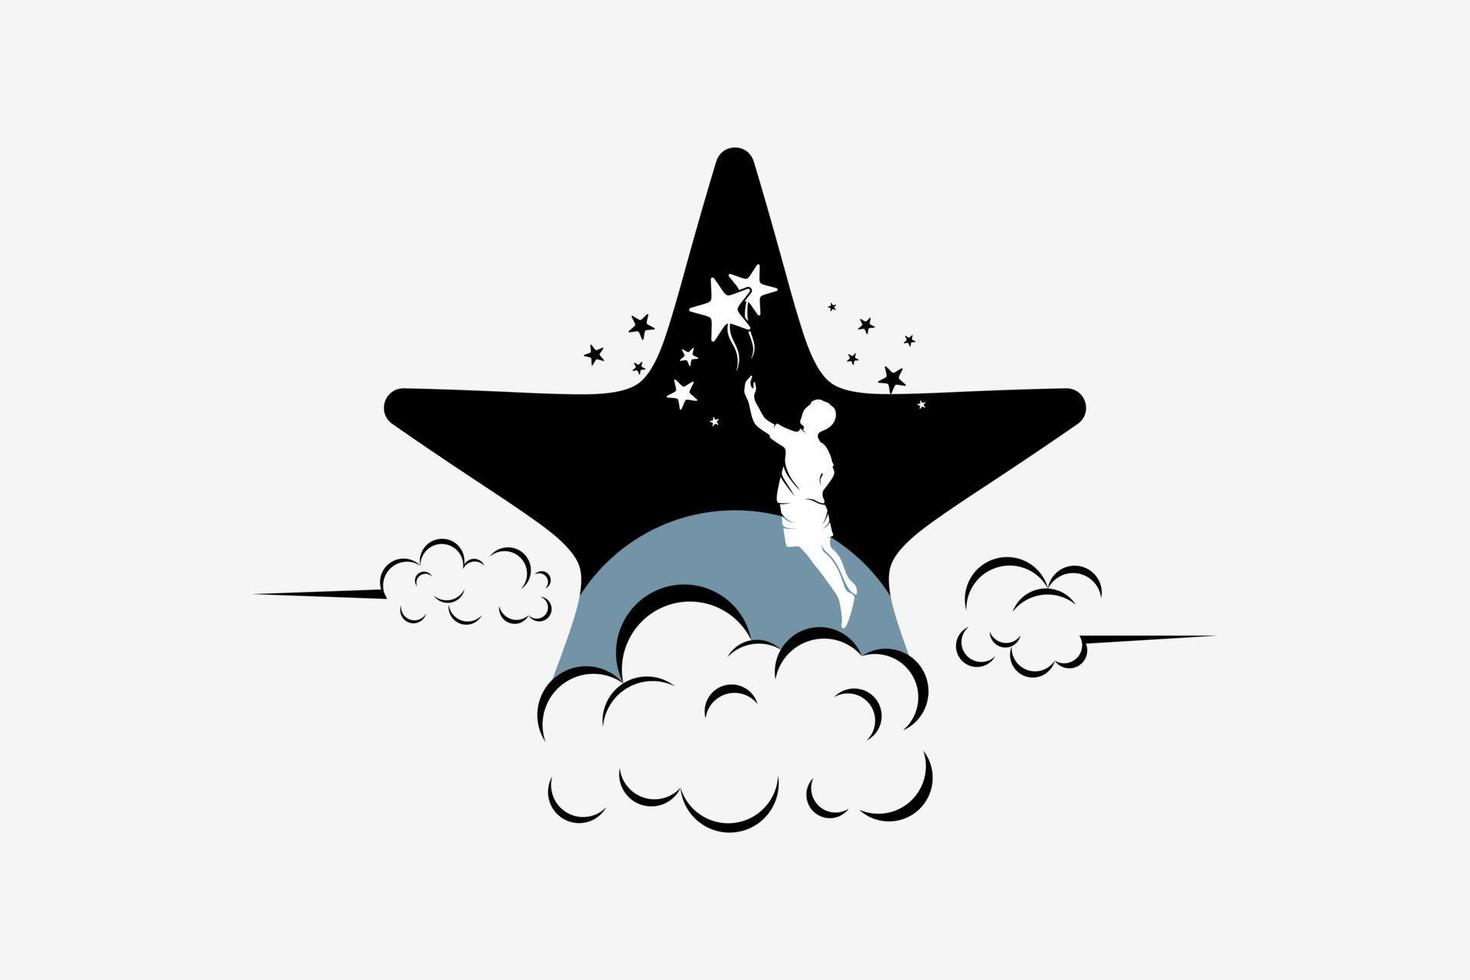 conception de logo atteignant les étoiles avec concept créatif, silhouette de personnes atteignant les étoiles avec fond de nuit dans l'icône étoile et lune vecteur